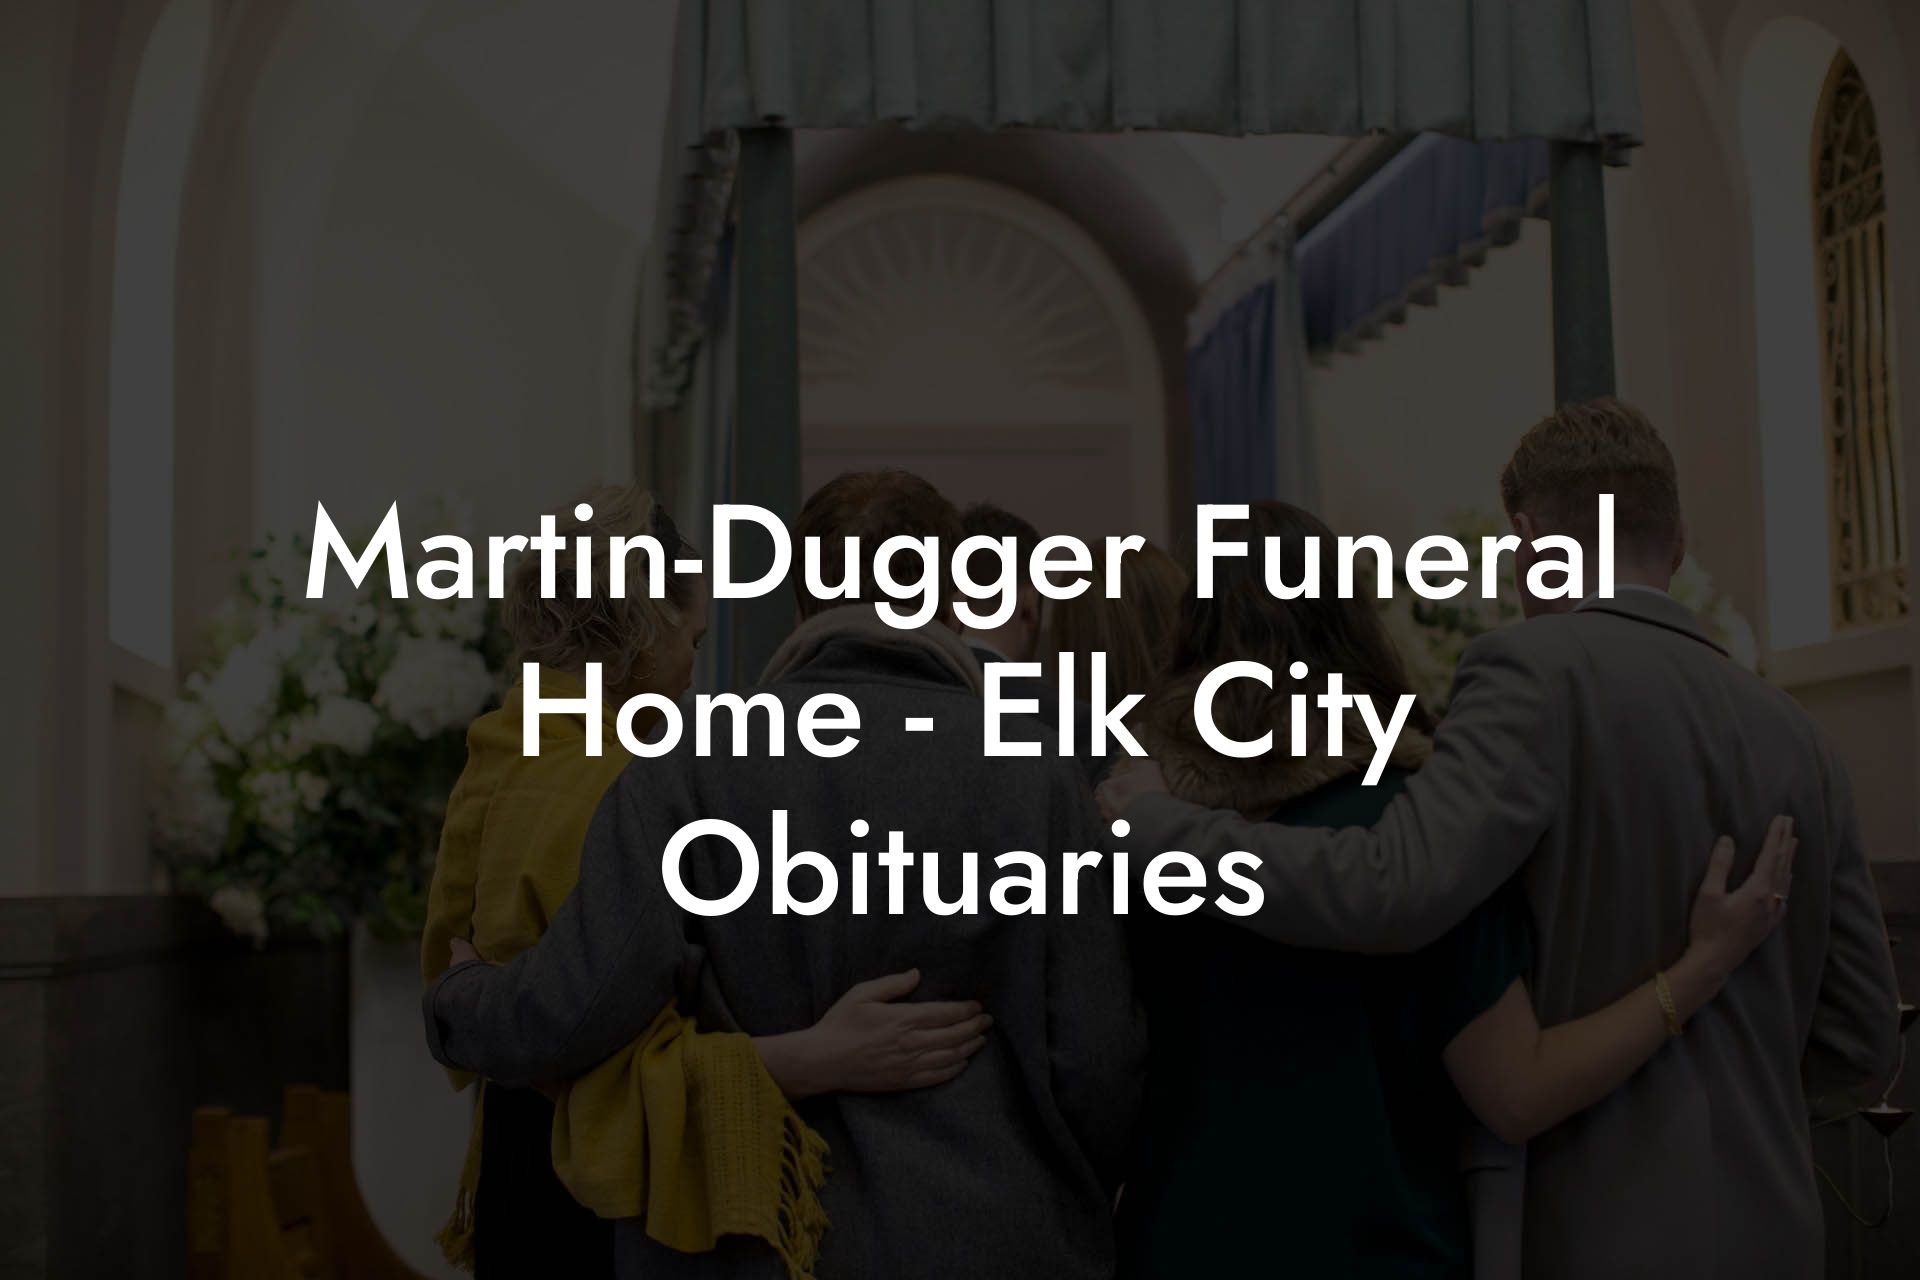 Martin-Dugger Funeral Home - Elk City Obituaries